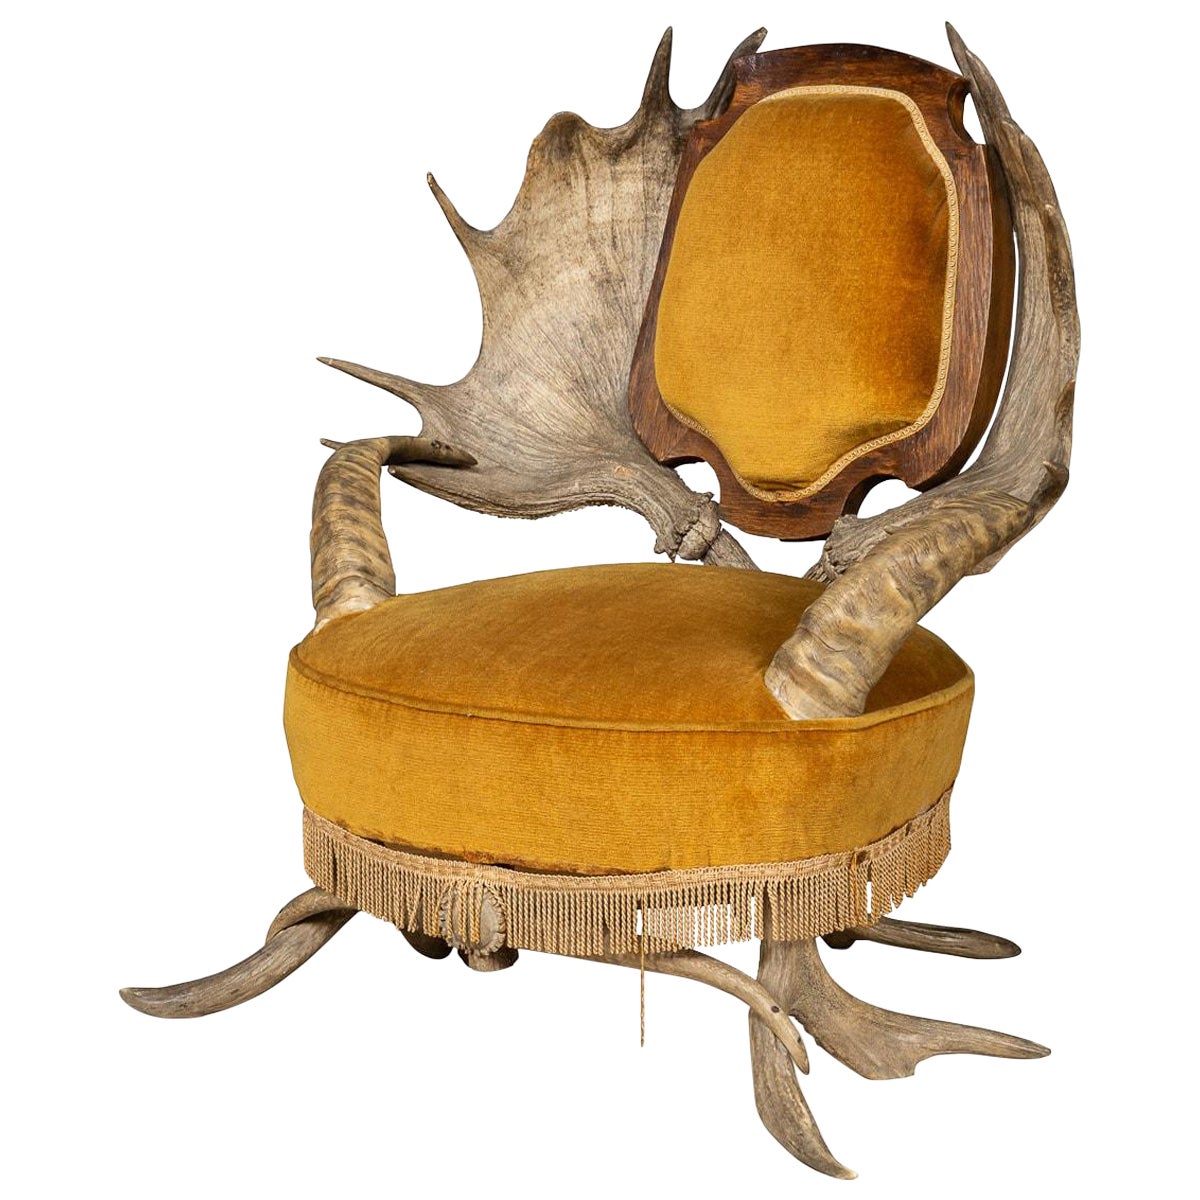 Chaise à trône en corne de fourrure Black Forest du 19e siècle, suisse-allemande